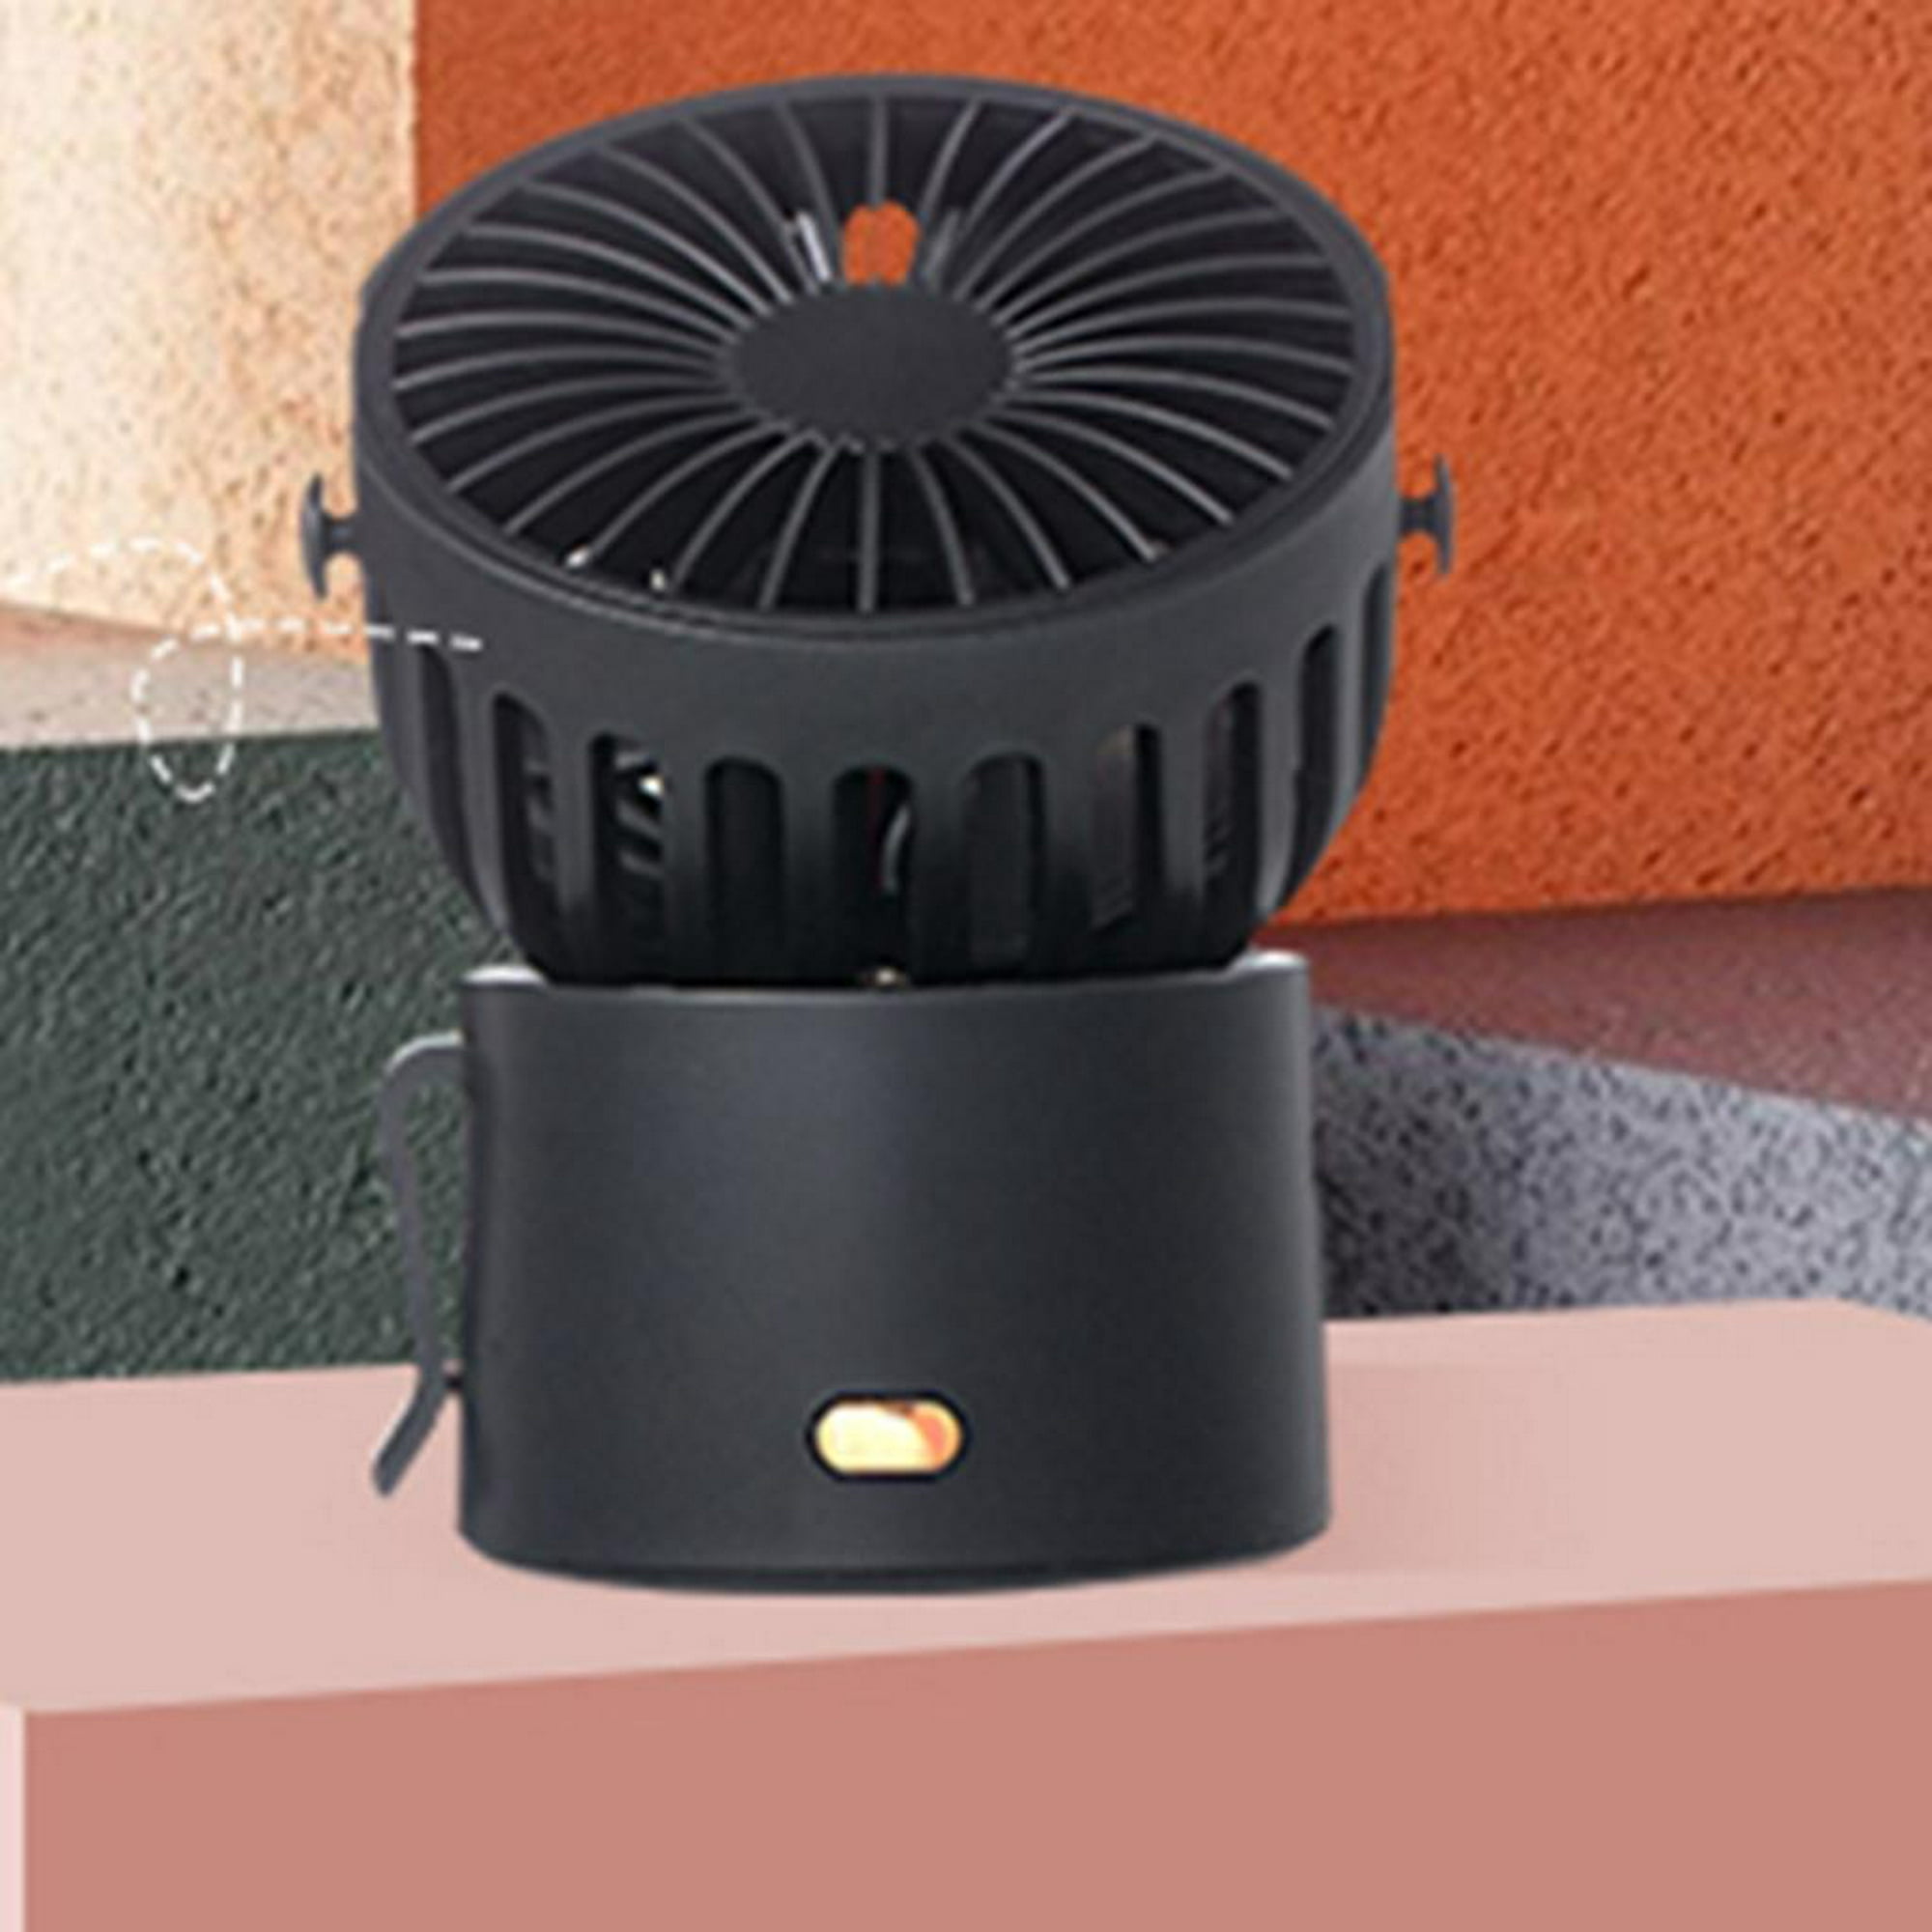 VODA Ventilador de estufa de 4 aspas, alimentado por calor, ventiladores  ecológicos para quemador de leña, chimenea, flujo de aire más grande de